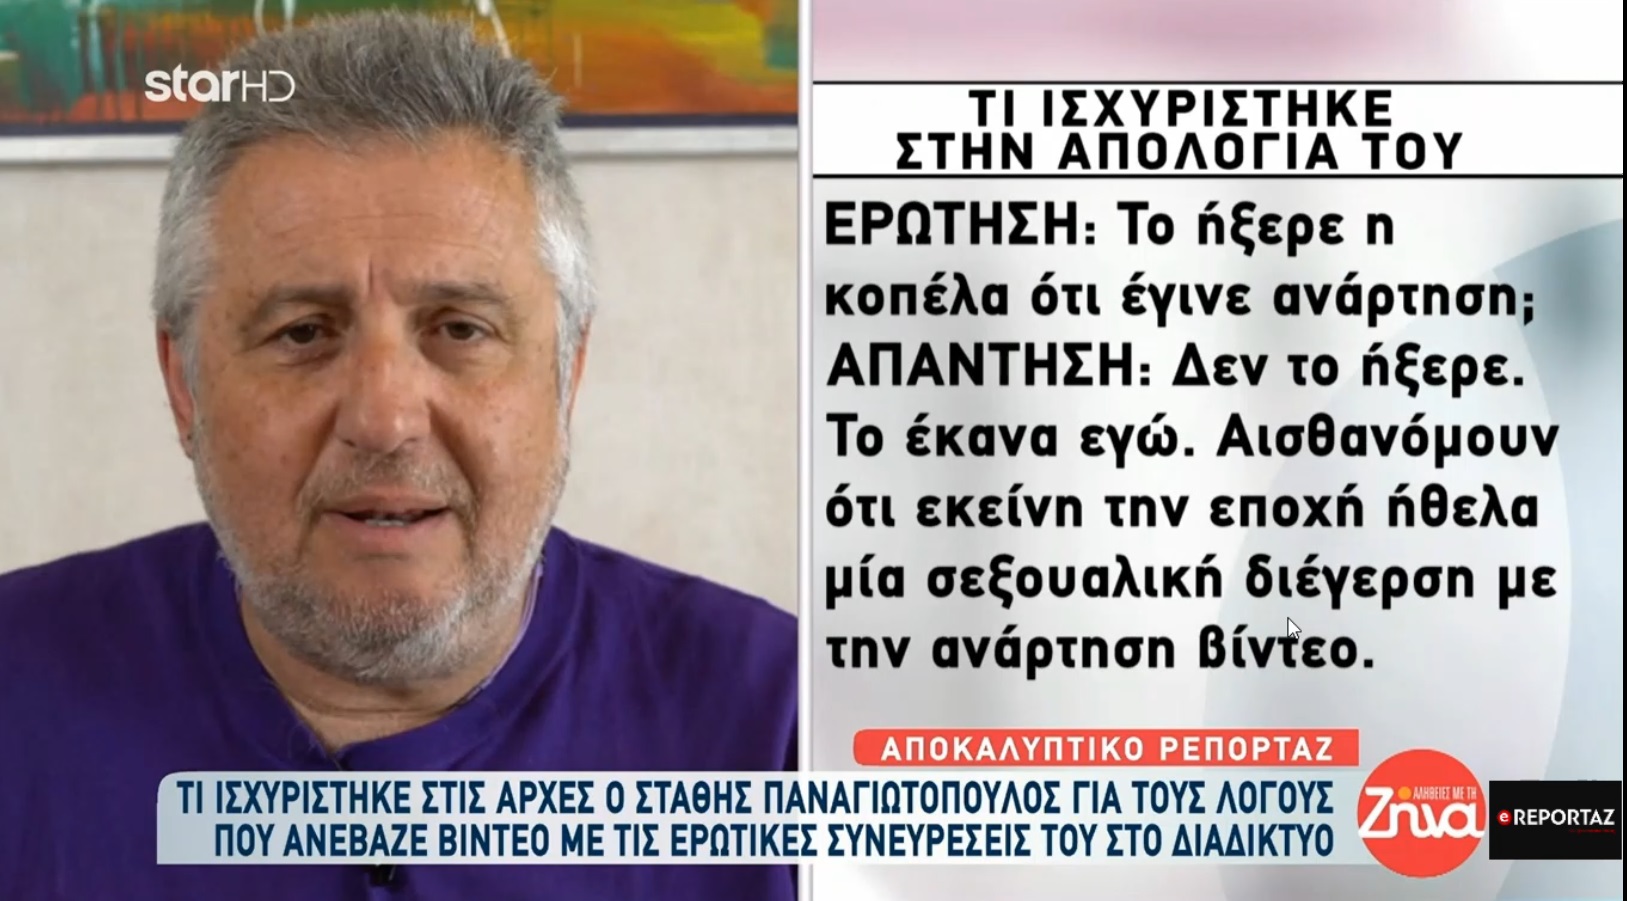 Στάθης Παναγιωτόπουλος:"Ηθελα μια σεξουαλική διέγερση με την ανάρτηση βίντεο" - Τι είπε η δεύτερη μηνύτρια